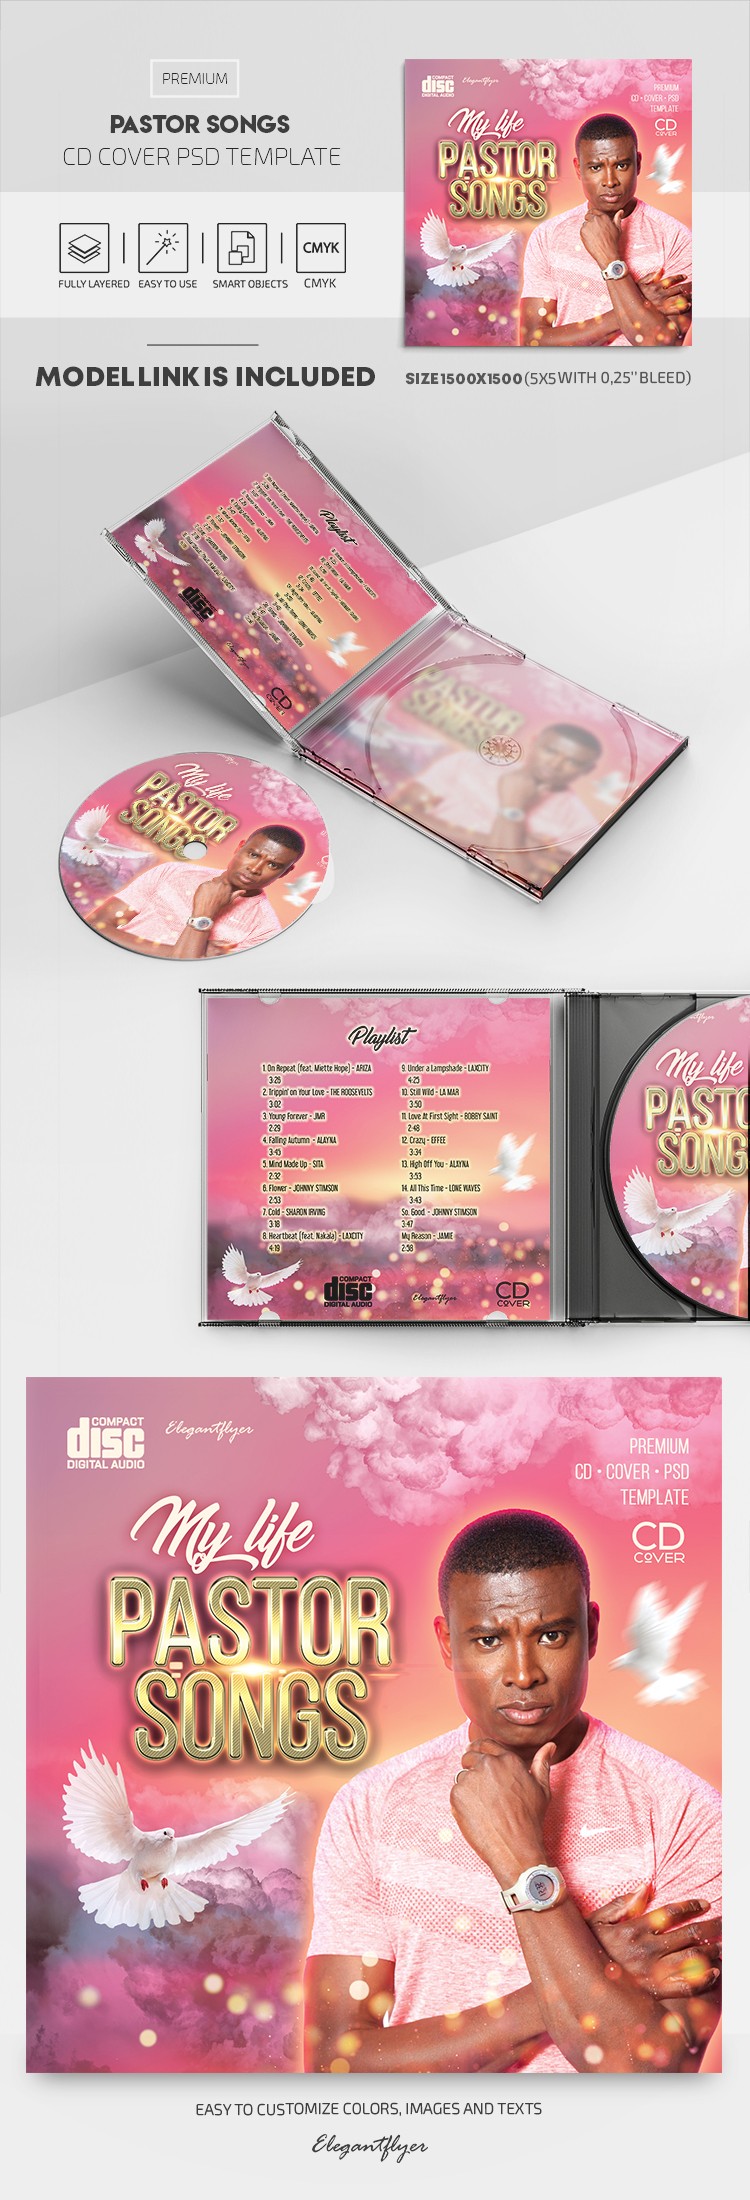 Couverture de CD du Pasteur Songs by ElegantFlyer